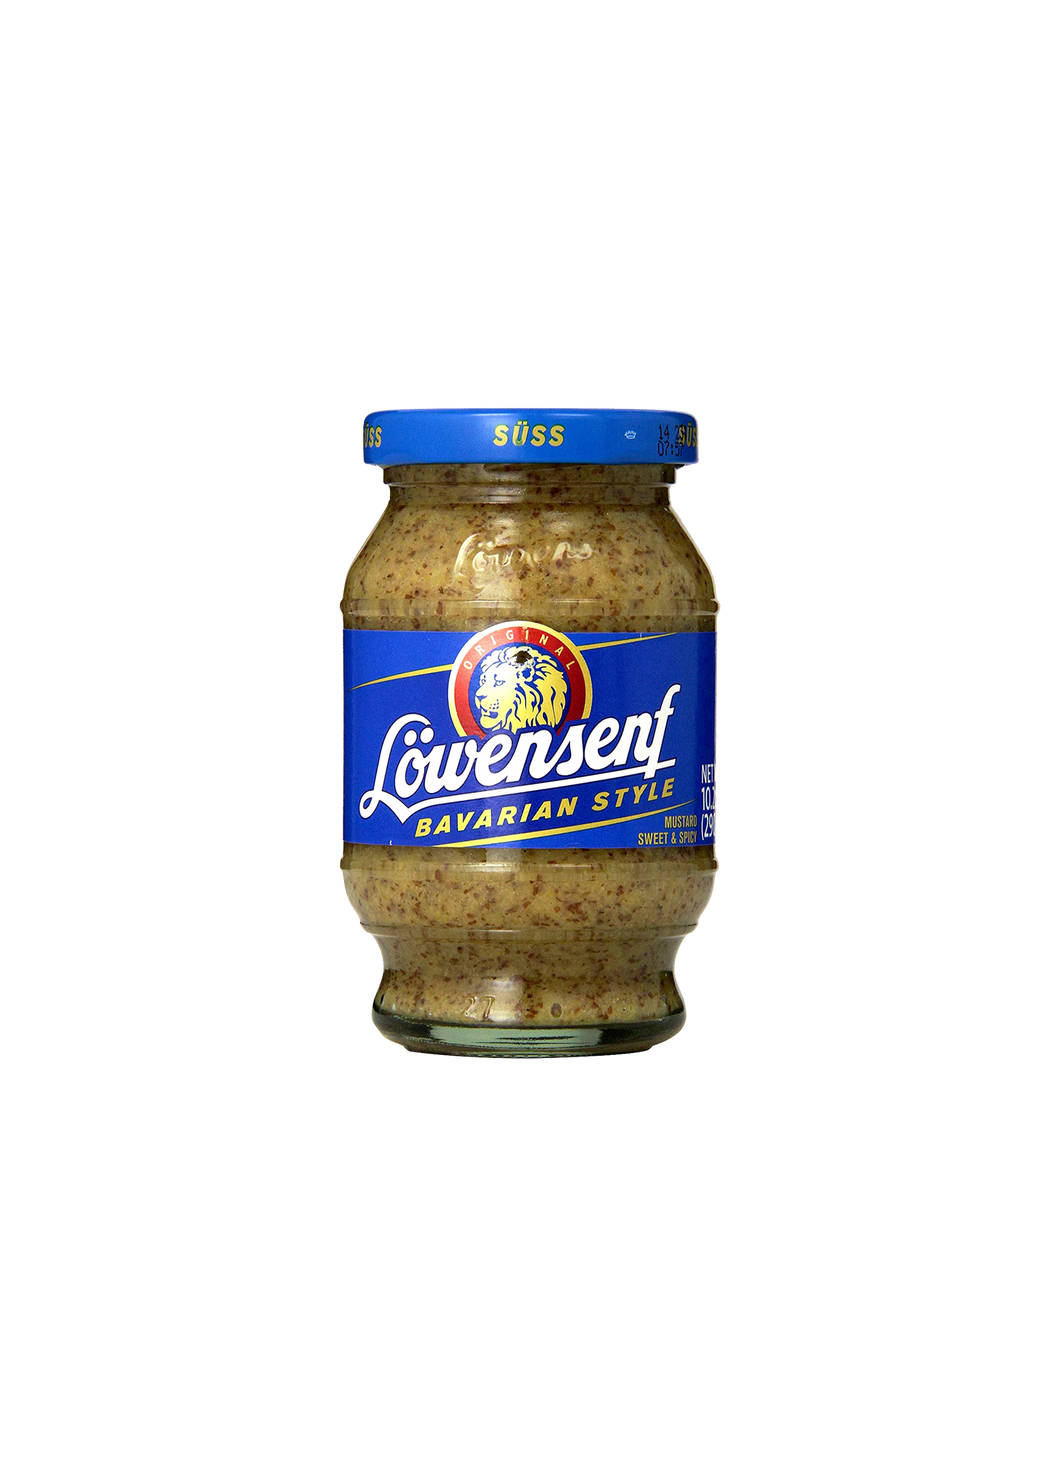 Lowensenf Bavarian Style Sweet & Spicy Mustard 285g